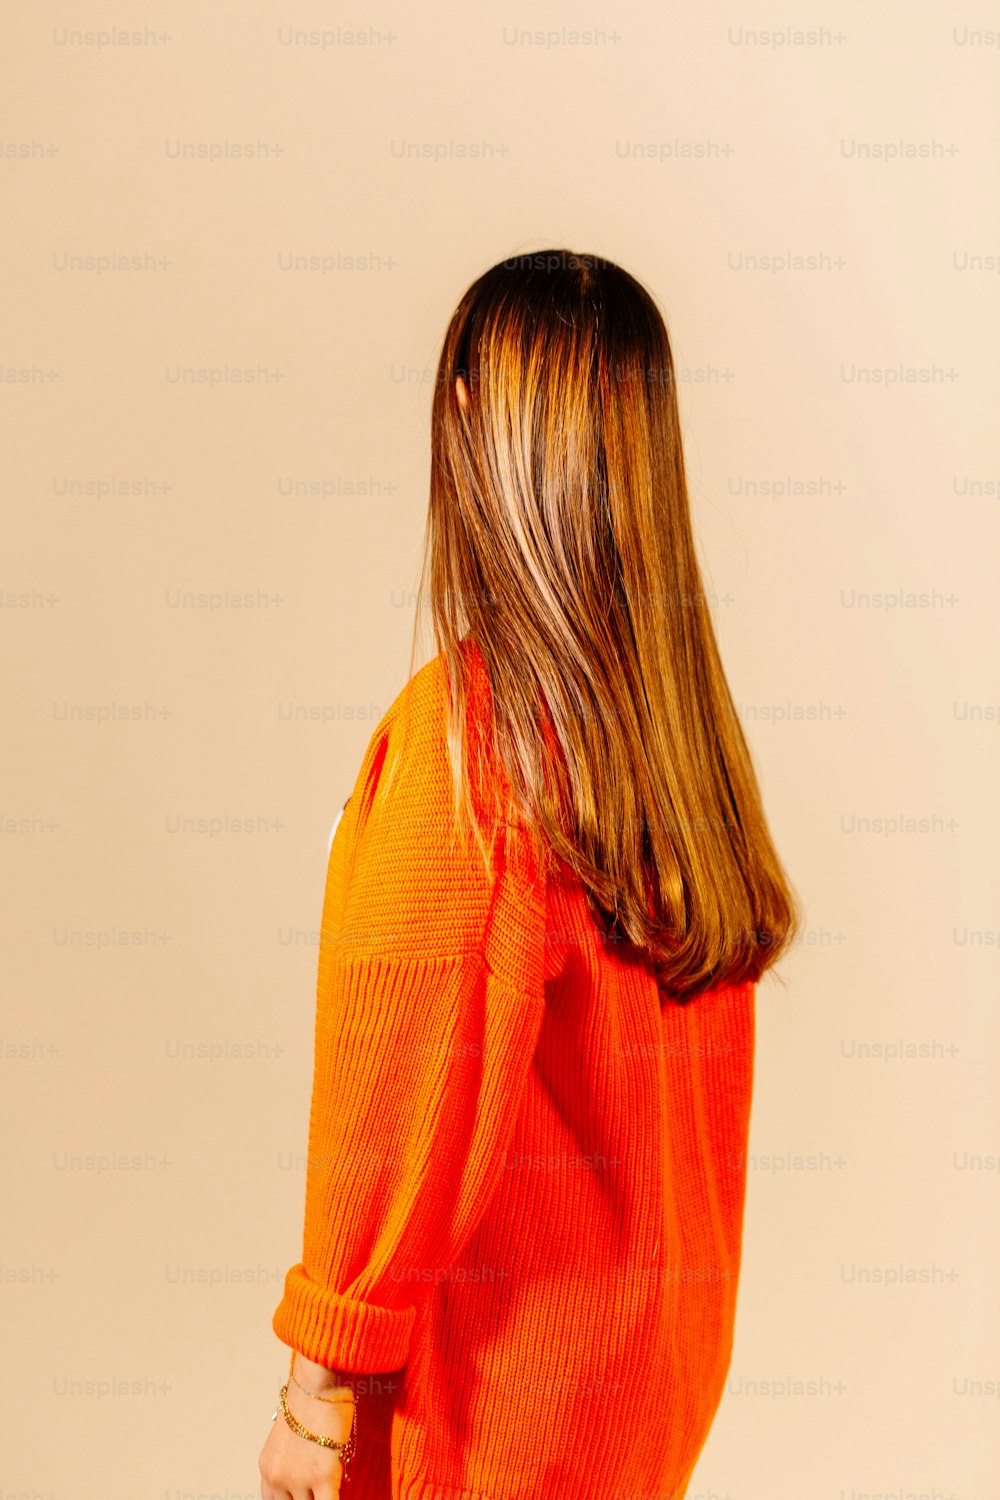 la parte posterior de la cabeza de una mujer con un suéter naranja